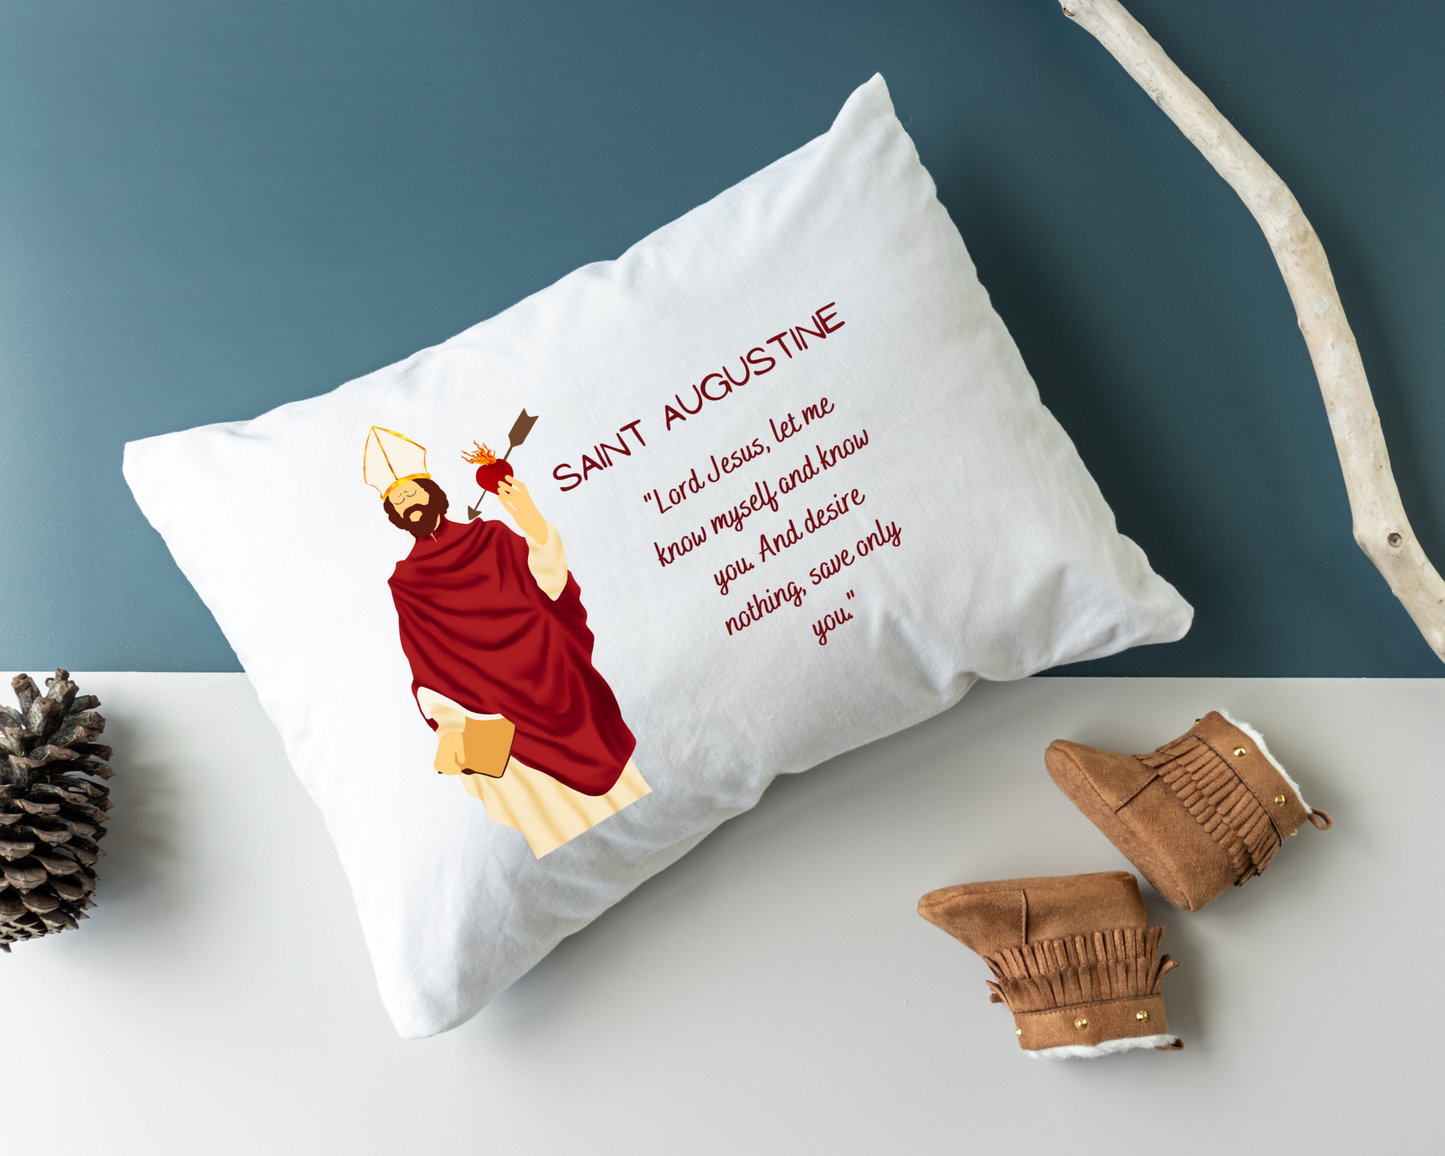 Saint Therese of Lisieux pillowcase